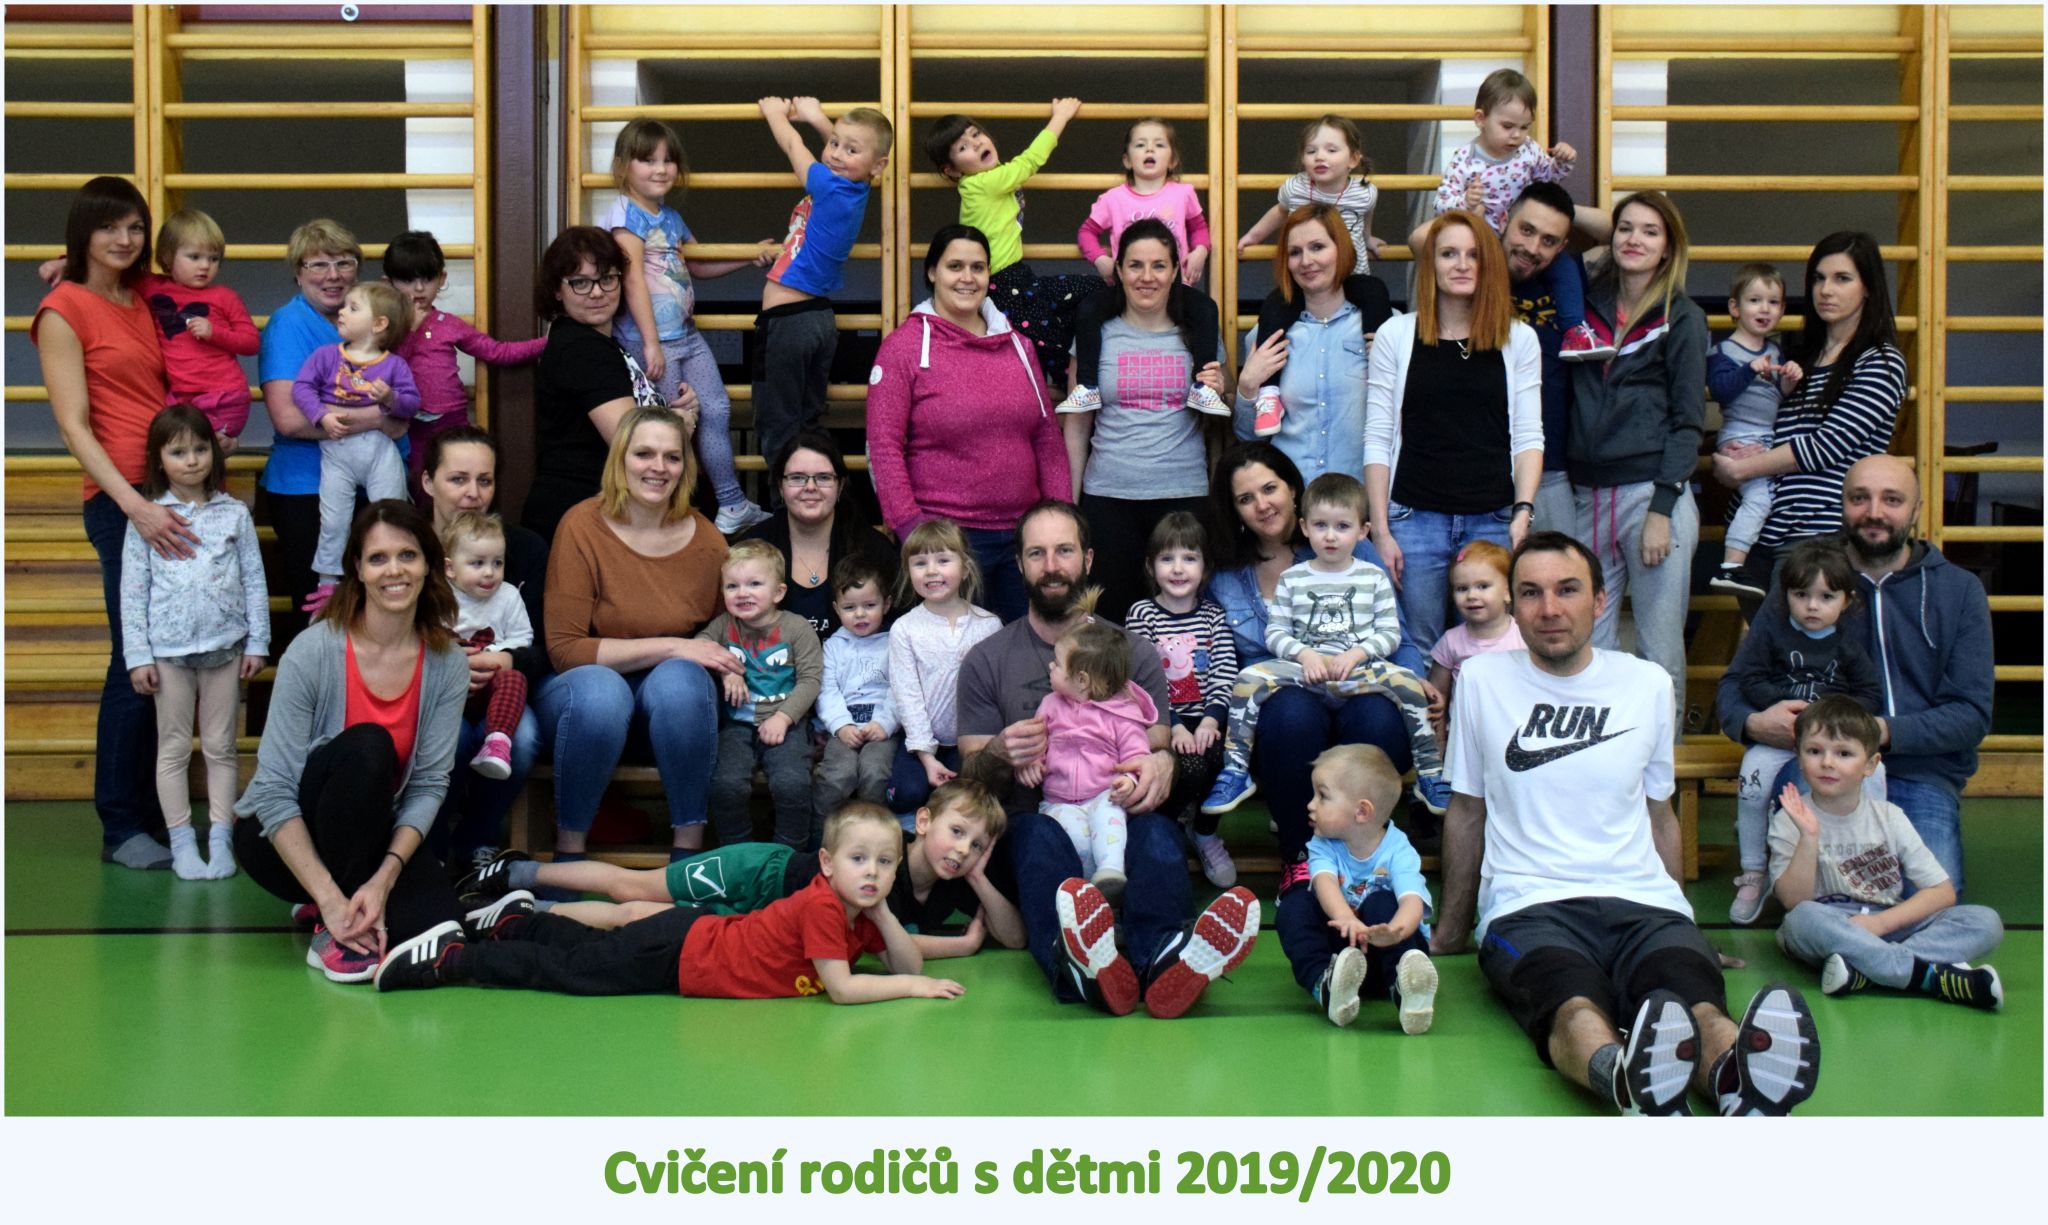 ročník 2019/2020 - zapsáno 37 dětí